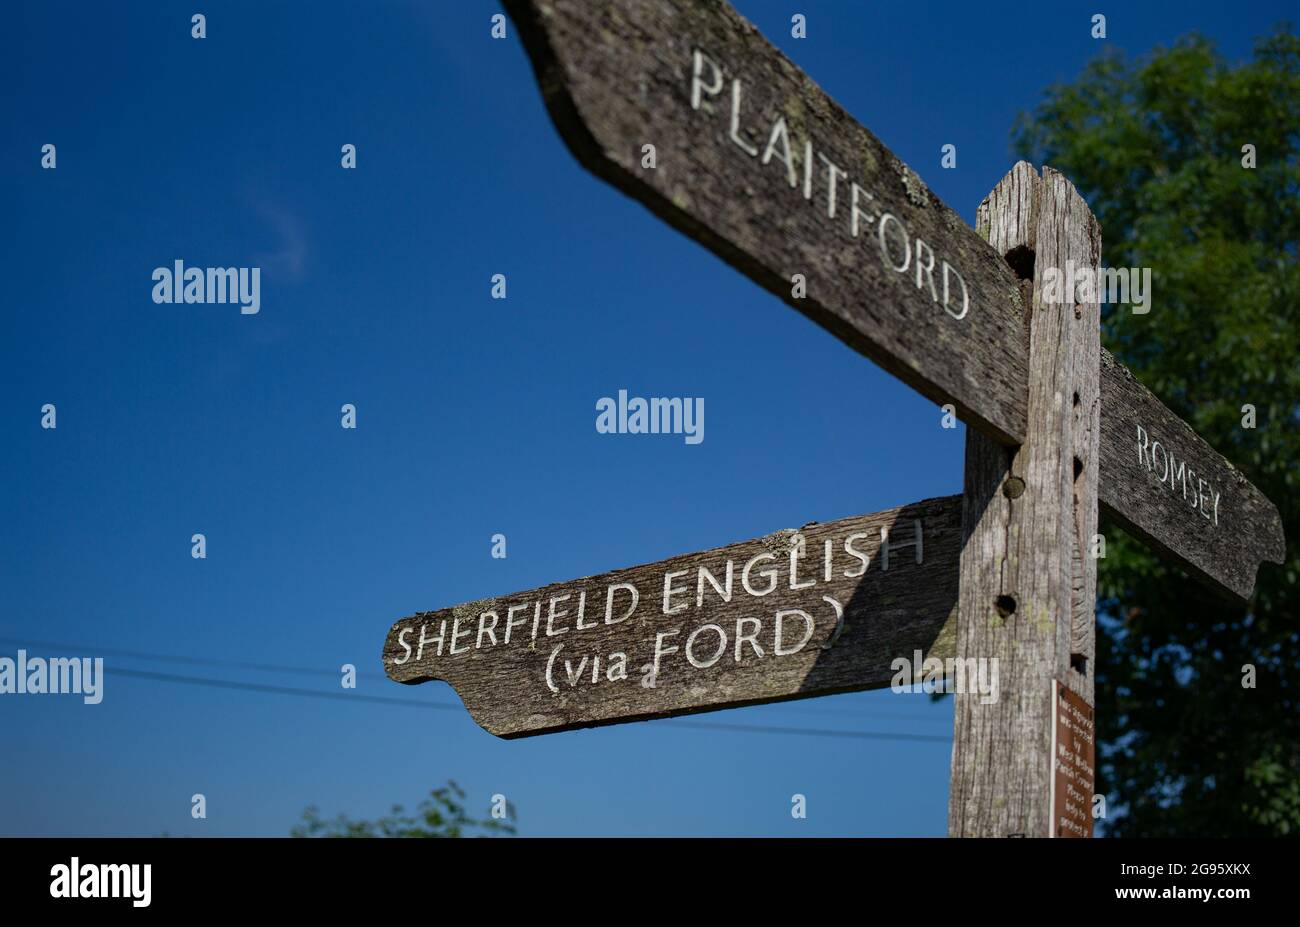 Ein Straßenverkehrsschild aus Holz auf dem Land, das die Wegbeschreibung an einer Kreuzung zu Sherfield English, Plaitford und Romsey in der Grafschaft Hampshire in Großbritannien anzeigt. Stockfoto